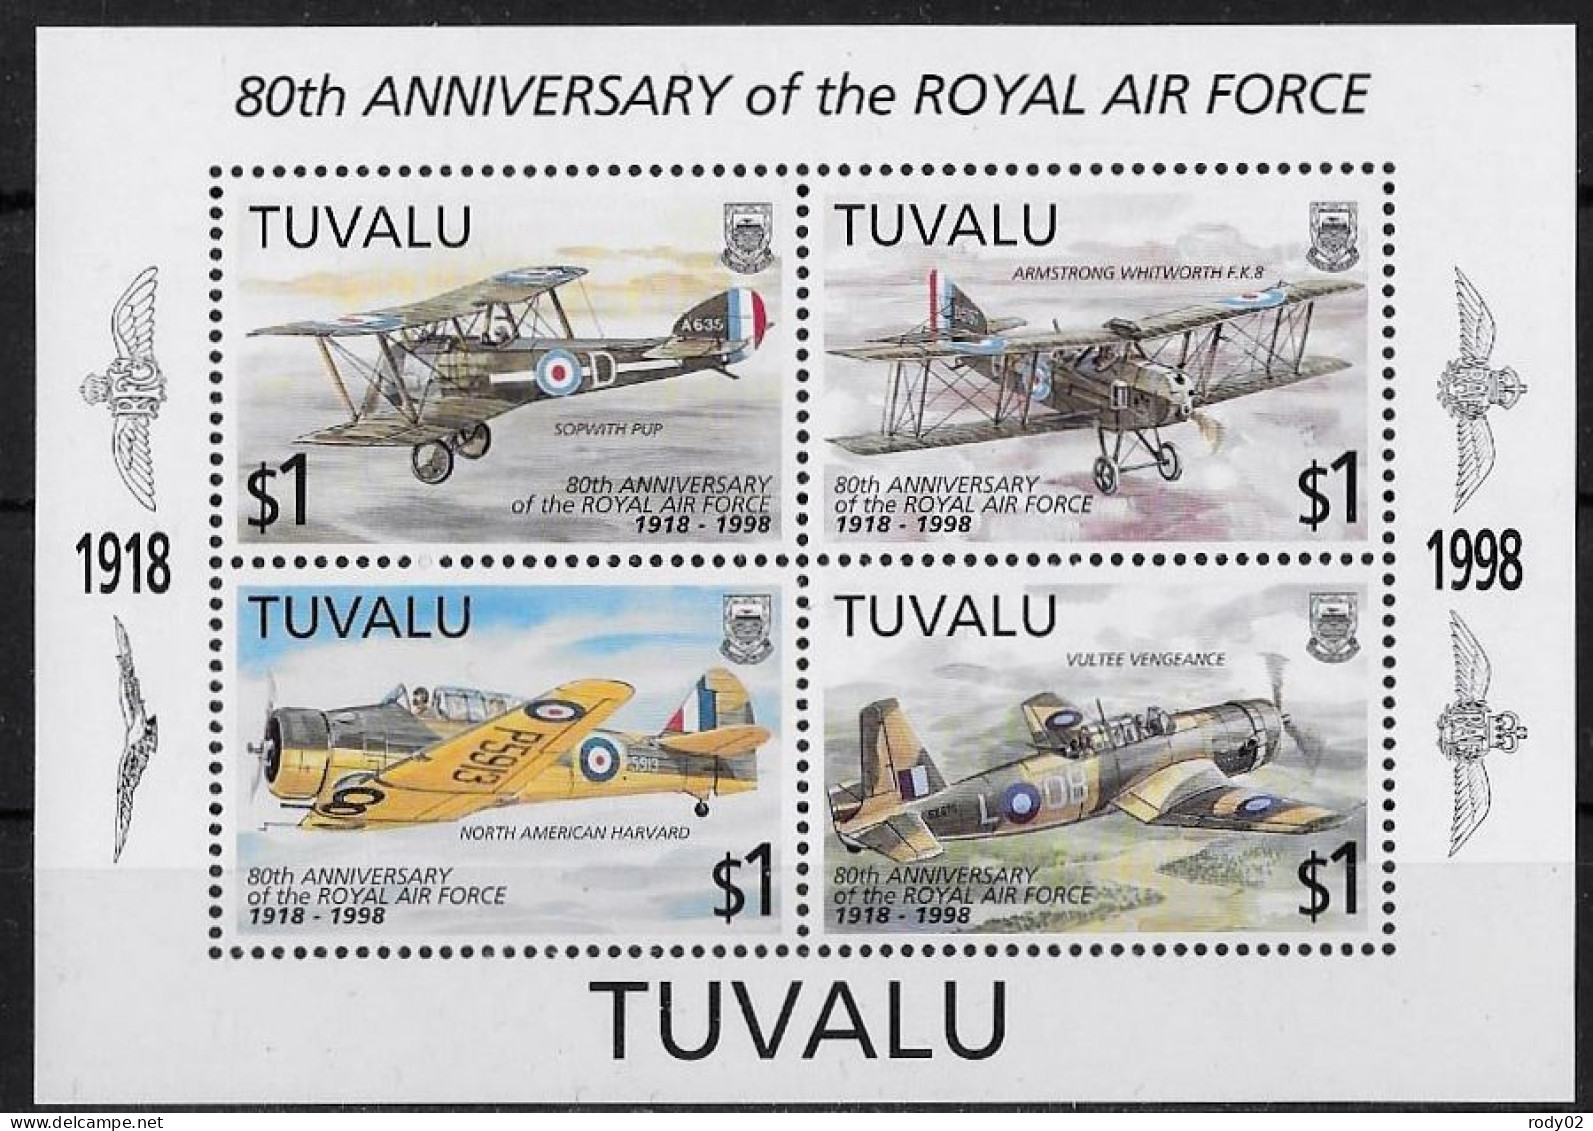 TUVALU - AVIATION - BF 62 - NEUF** MNH - Airplanes